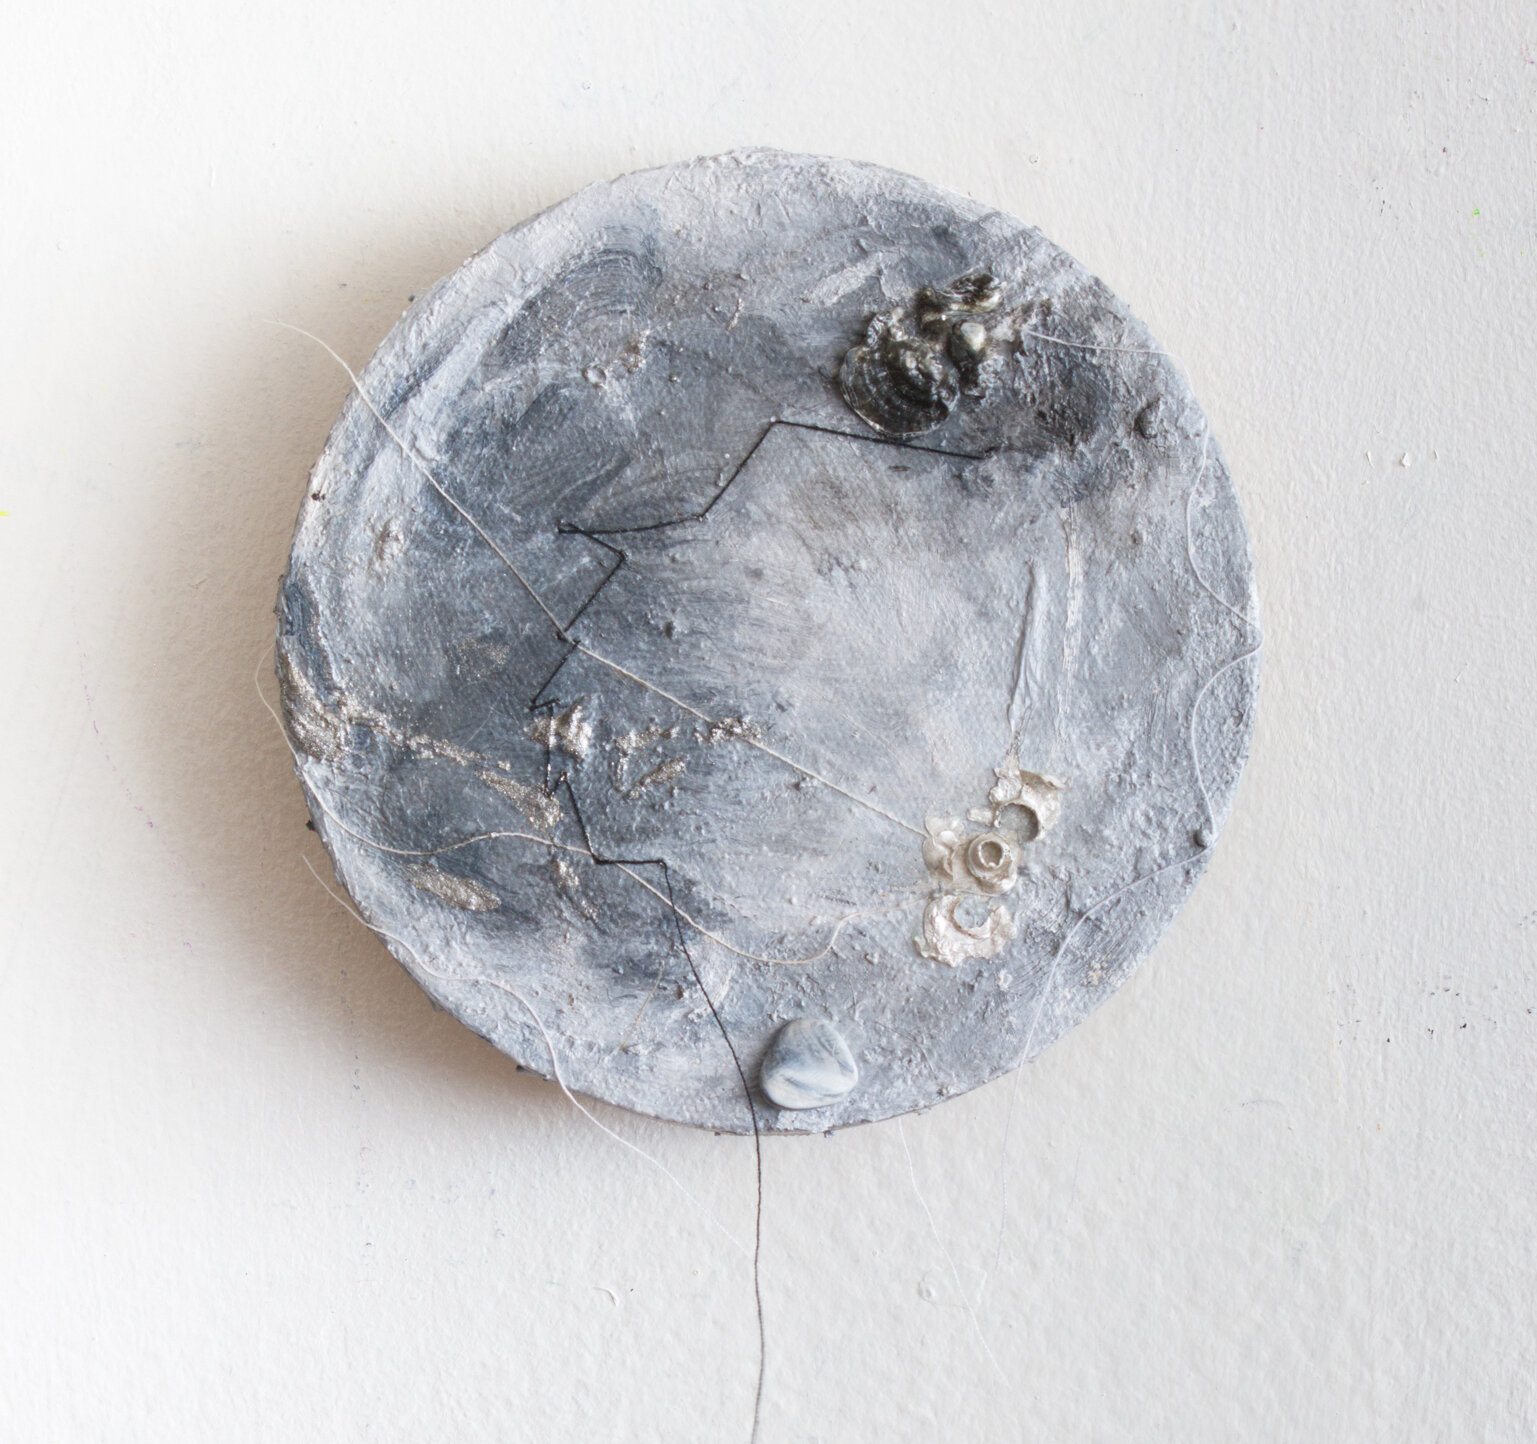 Yin Yang 5” Tondo acrylic, thread, stone & shell on canvas 2019 $400 Victoria  Pacimeo.jpg